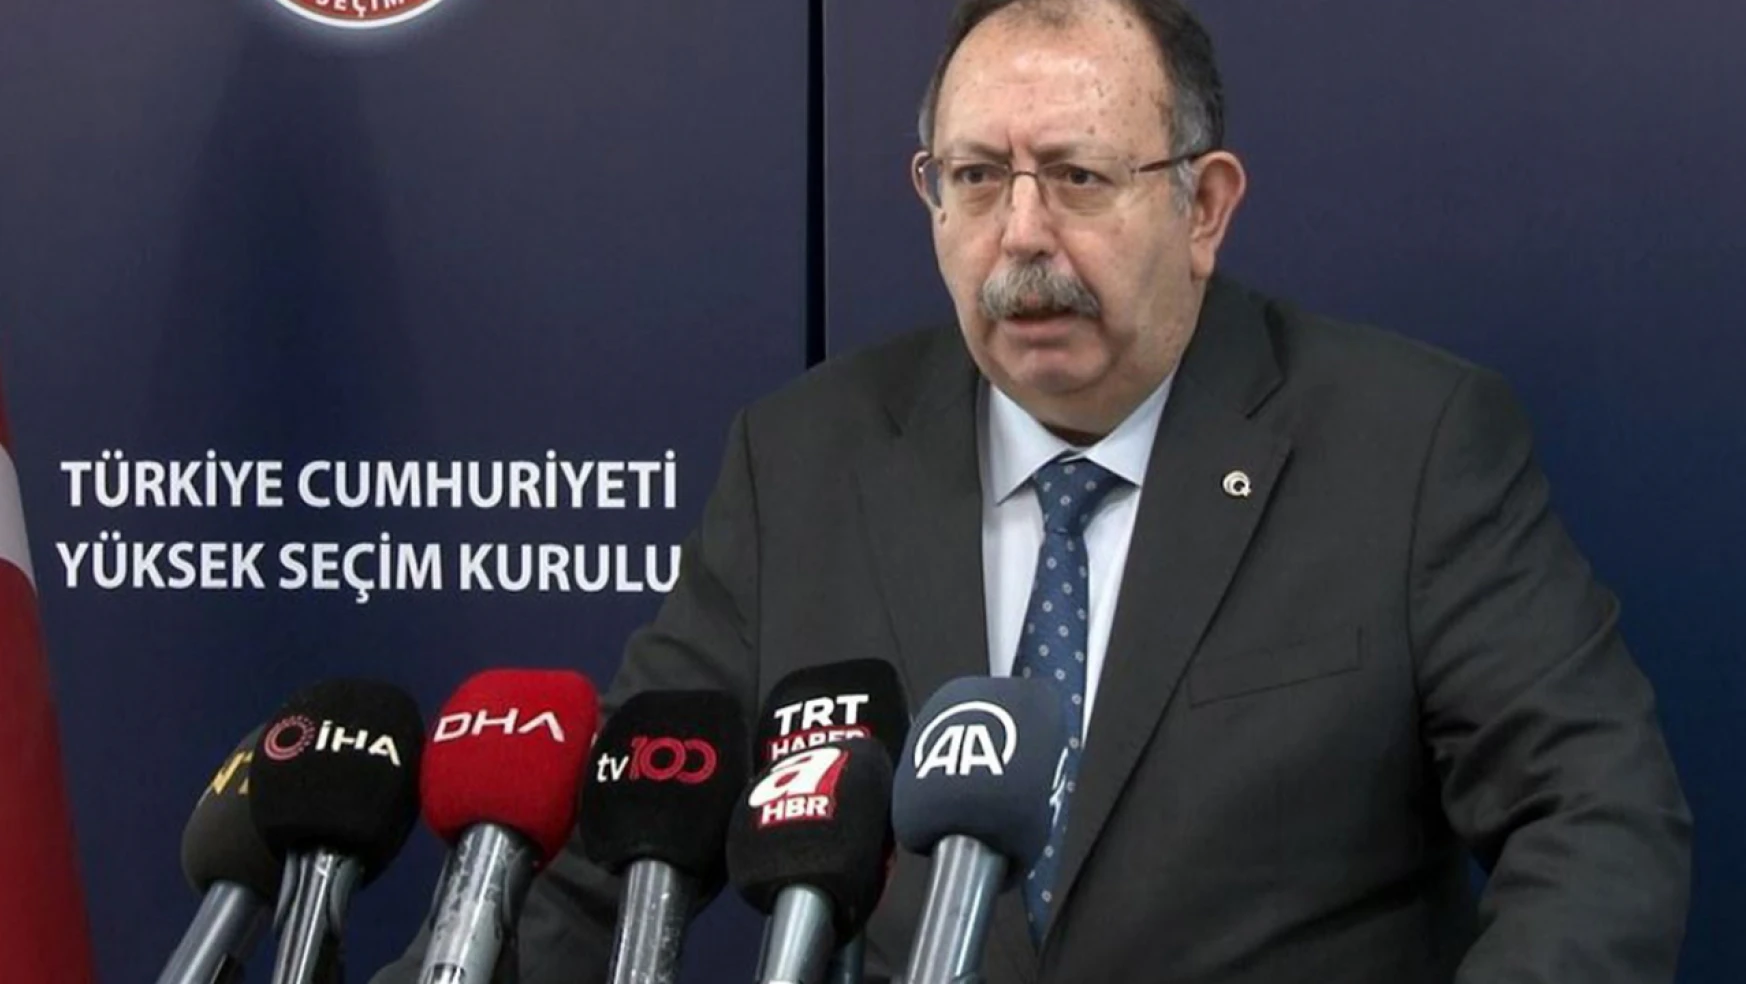 YSK Başkanı Yener: AK Parti'nin 2, CHP'nin 1, MHP'nin 1, DEM Parti'nin 2 itirazı kabul edildi